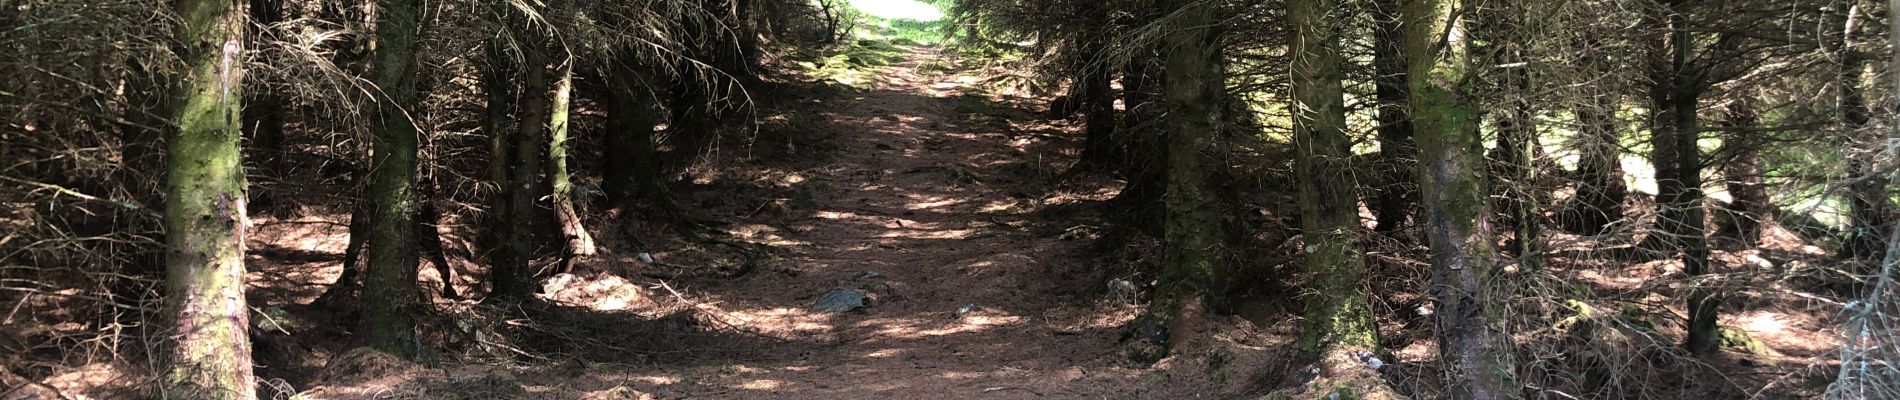 Trail Walking Unknown - Ecosse parc naturel de Duror - Photo